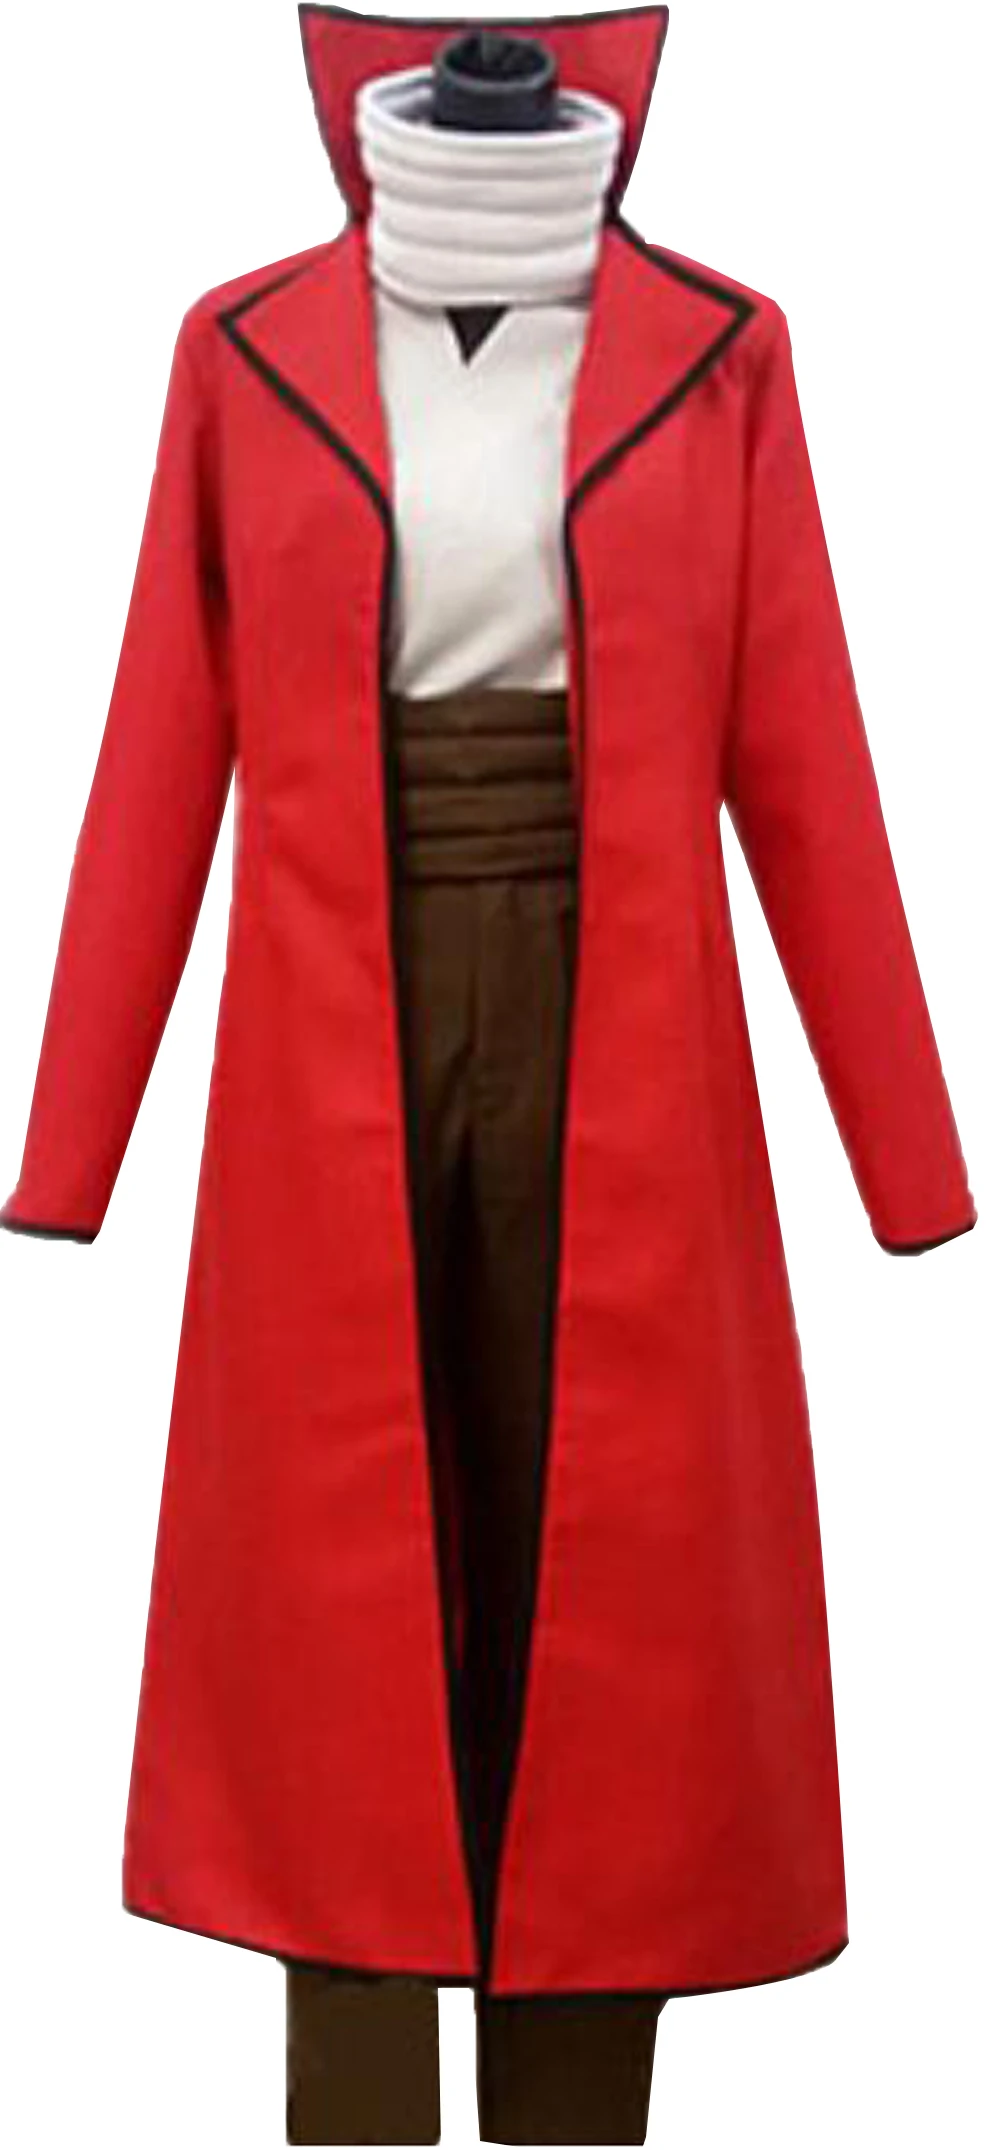 

Gintama Косплэй костюм Саката гинтоки Косплэй красные мужские кимоно маскарадный костюм Gintama Косплэй костюм равномерный изготовленный на зака...